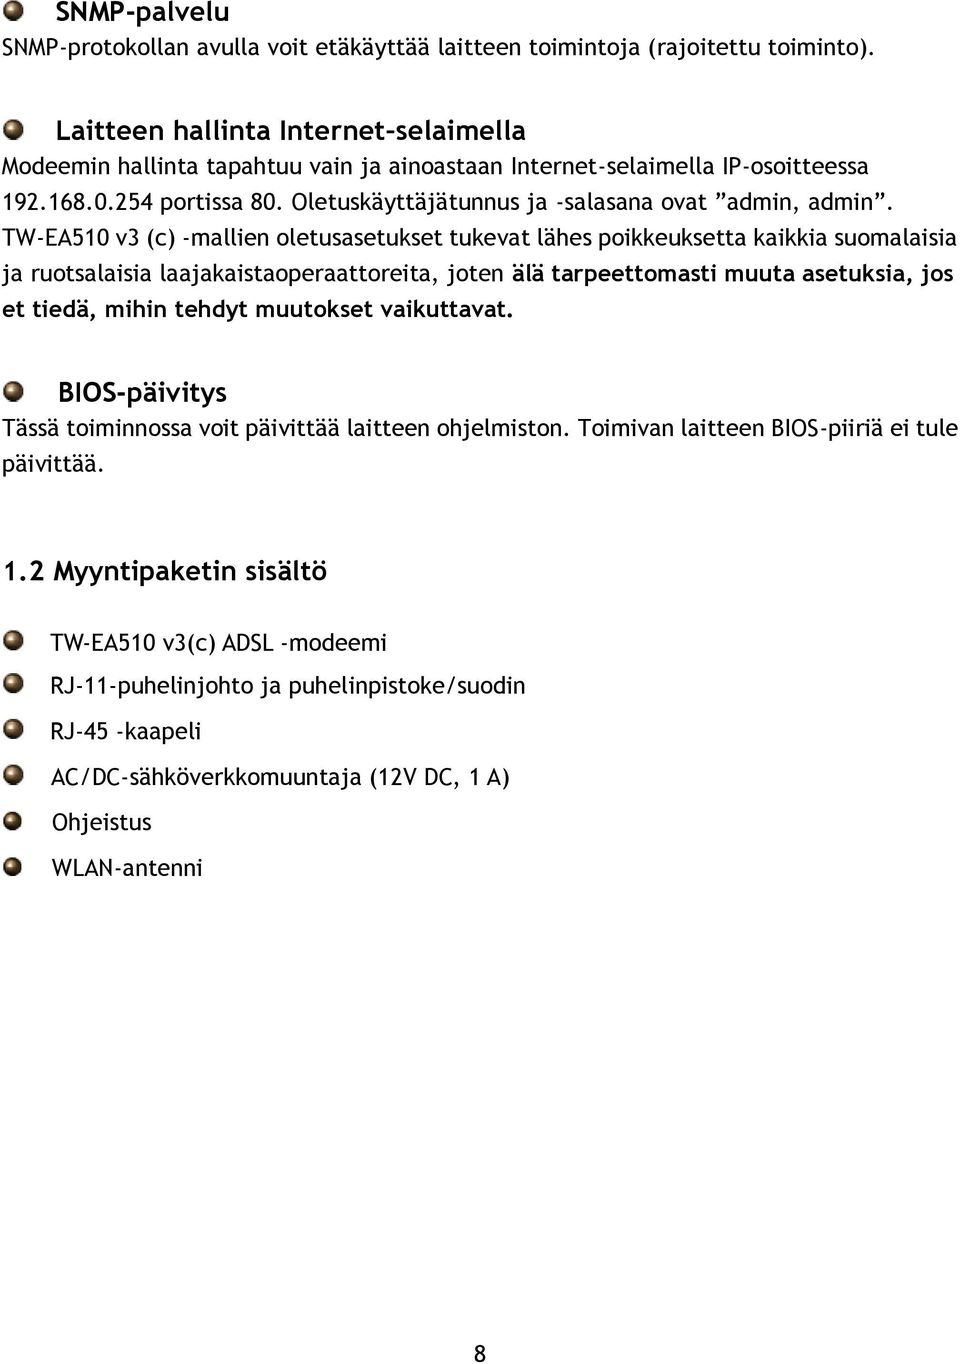 TW-EA510 v3 (c) -mallien oletusasetukset tukevat lähes poikkeuksetta kaikkia suomalaisia ja ruotsalaisia laajakaistaoperaattoreita, joten älä tarpeettomasti muuta asetuksia, jos et tiedä, mihin